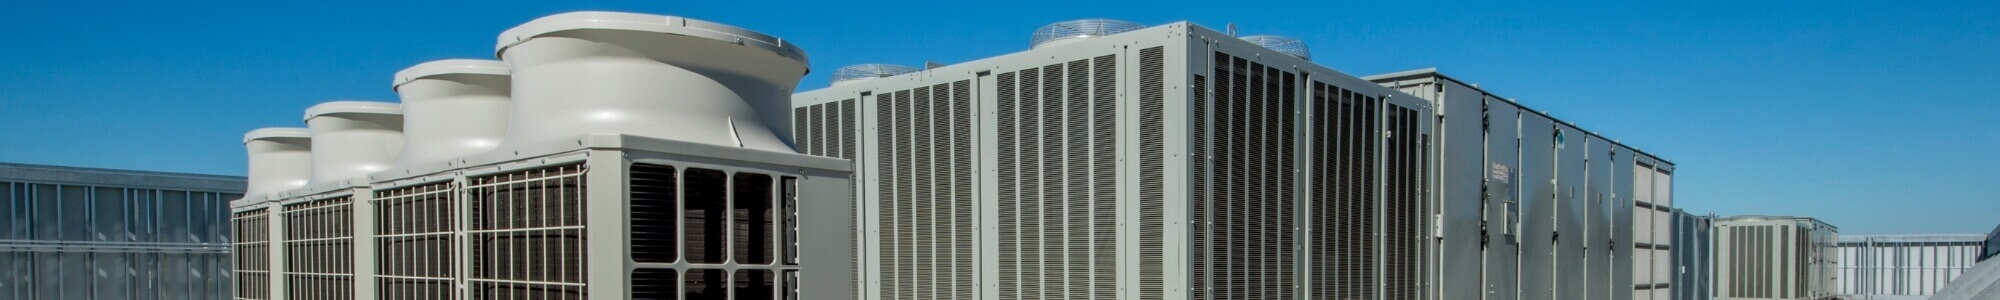 HVAC services in Markham